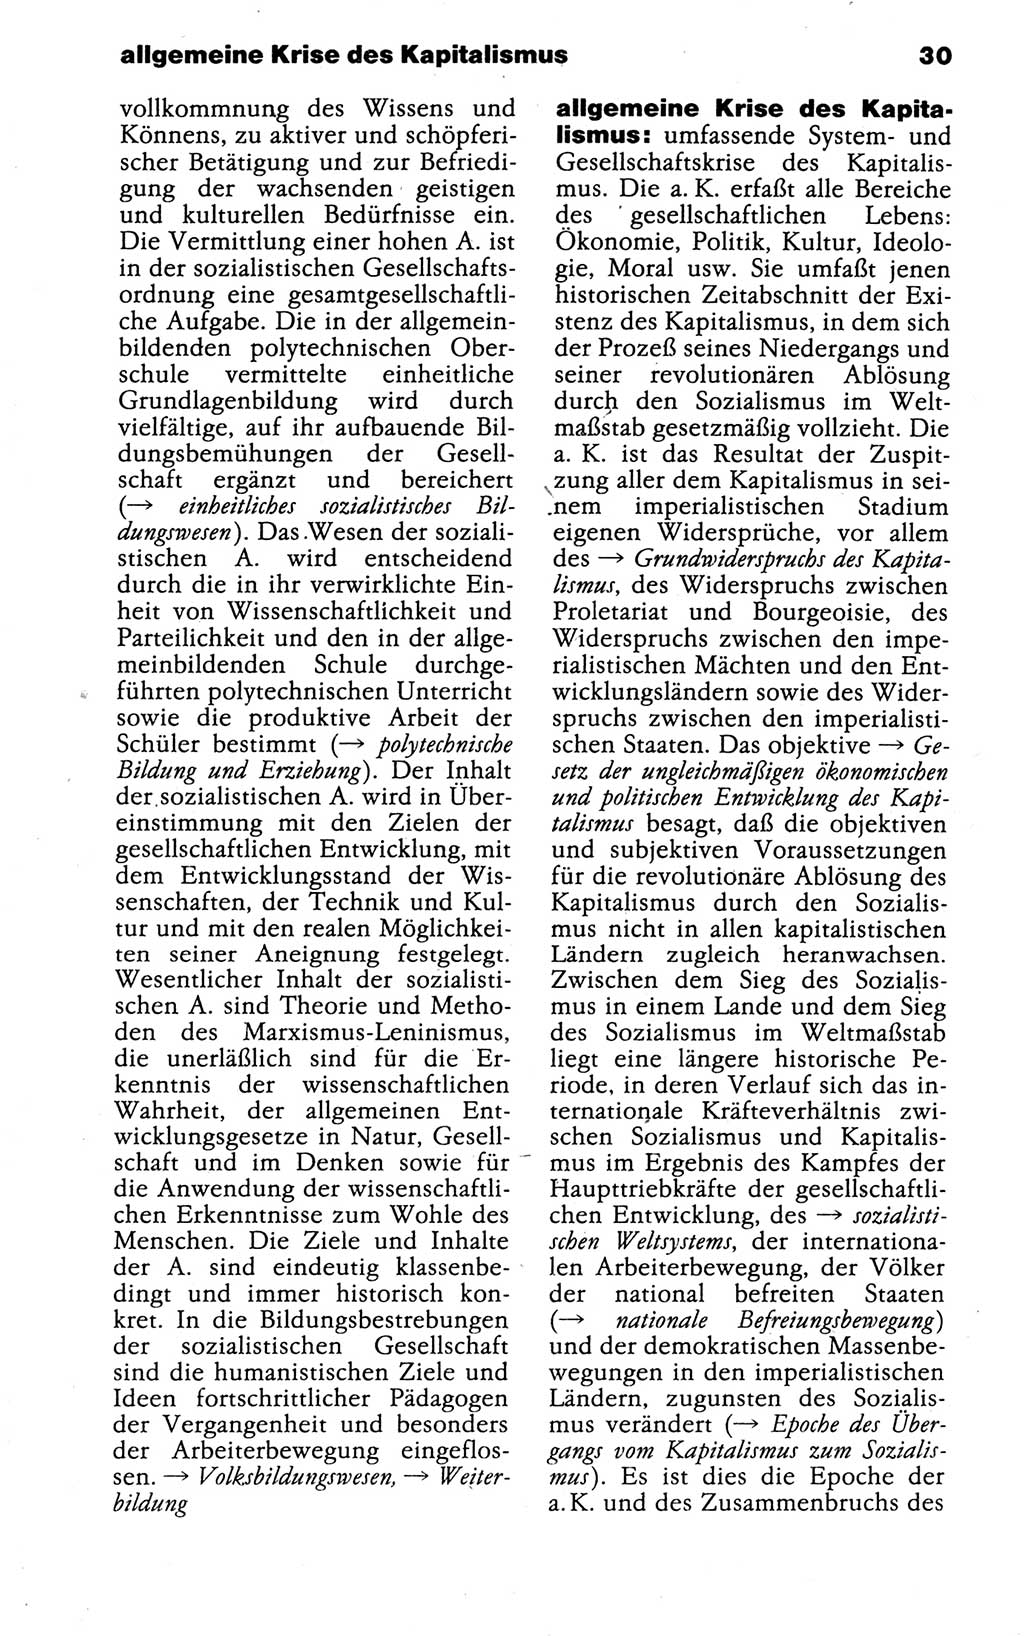 Kleines politisches Wörterbuch [Deutsche Demokratische Republik (DDR)] 1988, Seite 30 (Kl. pol. Wb. DDR 1988, S. 30)